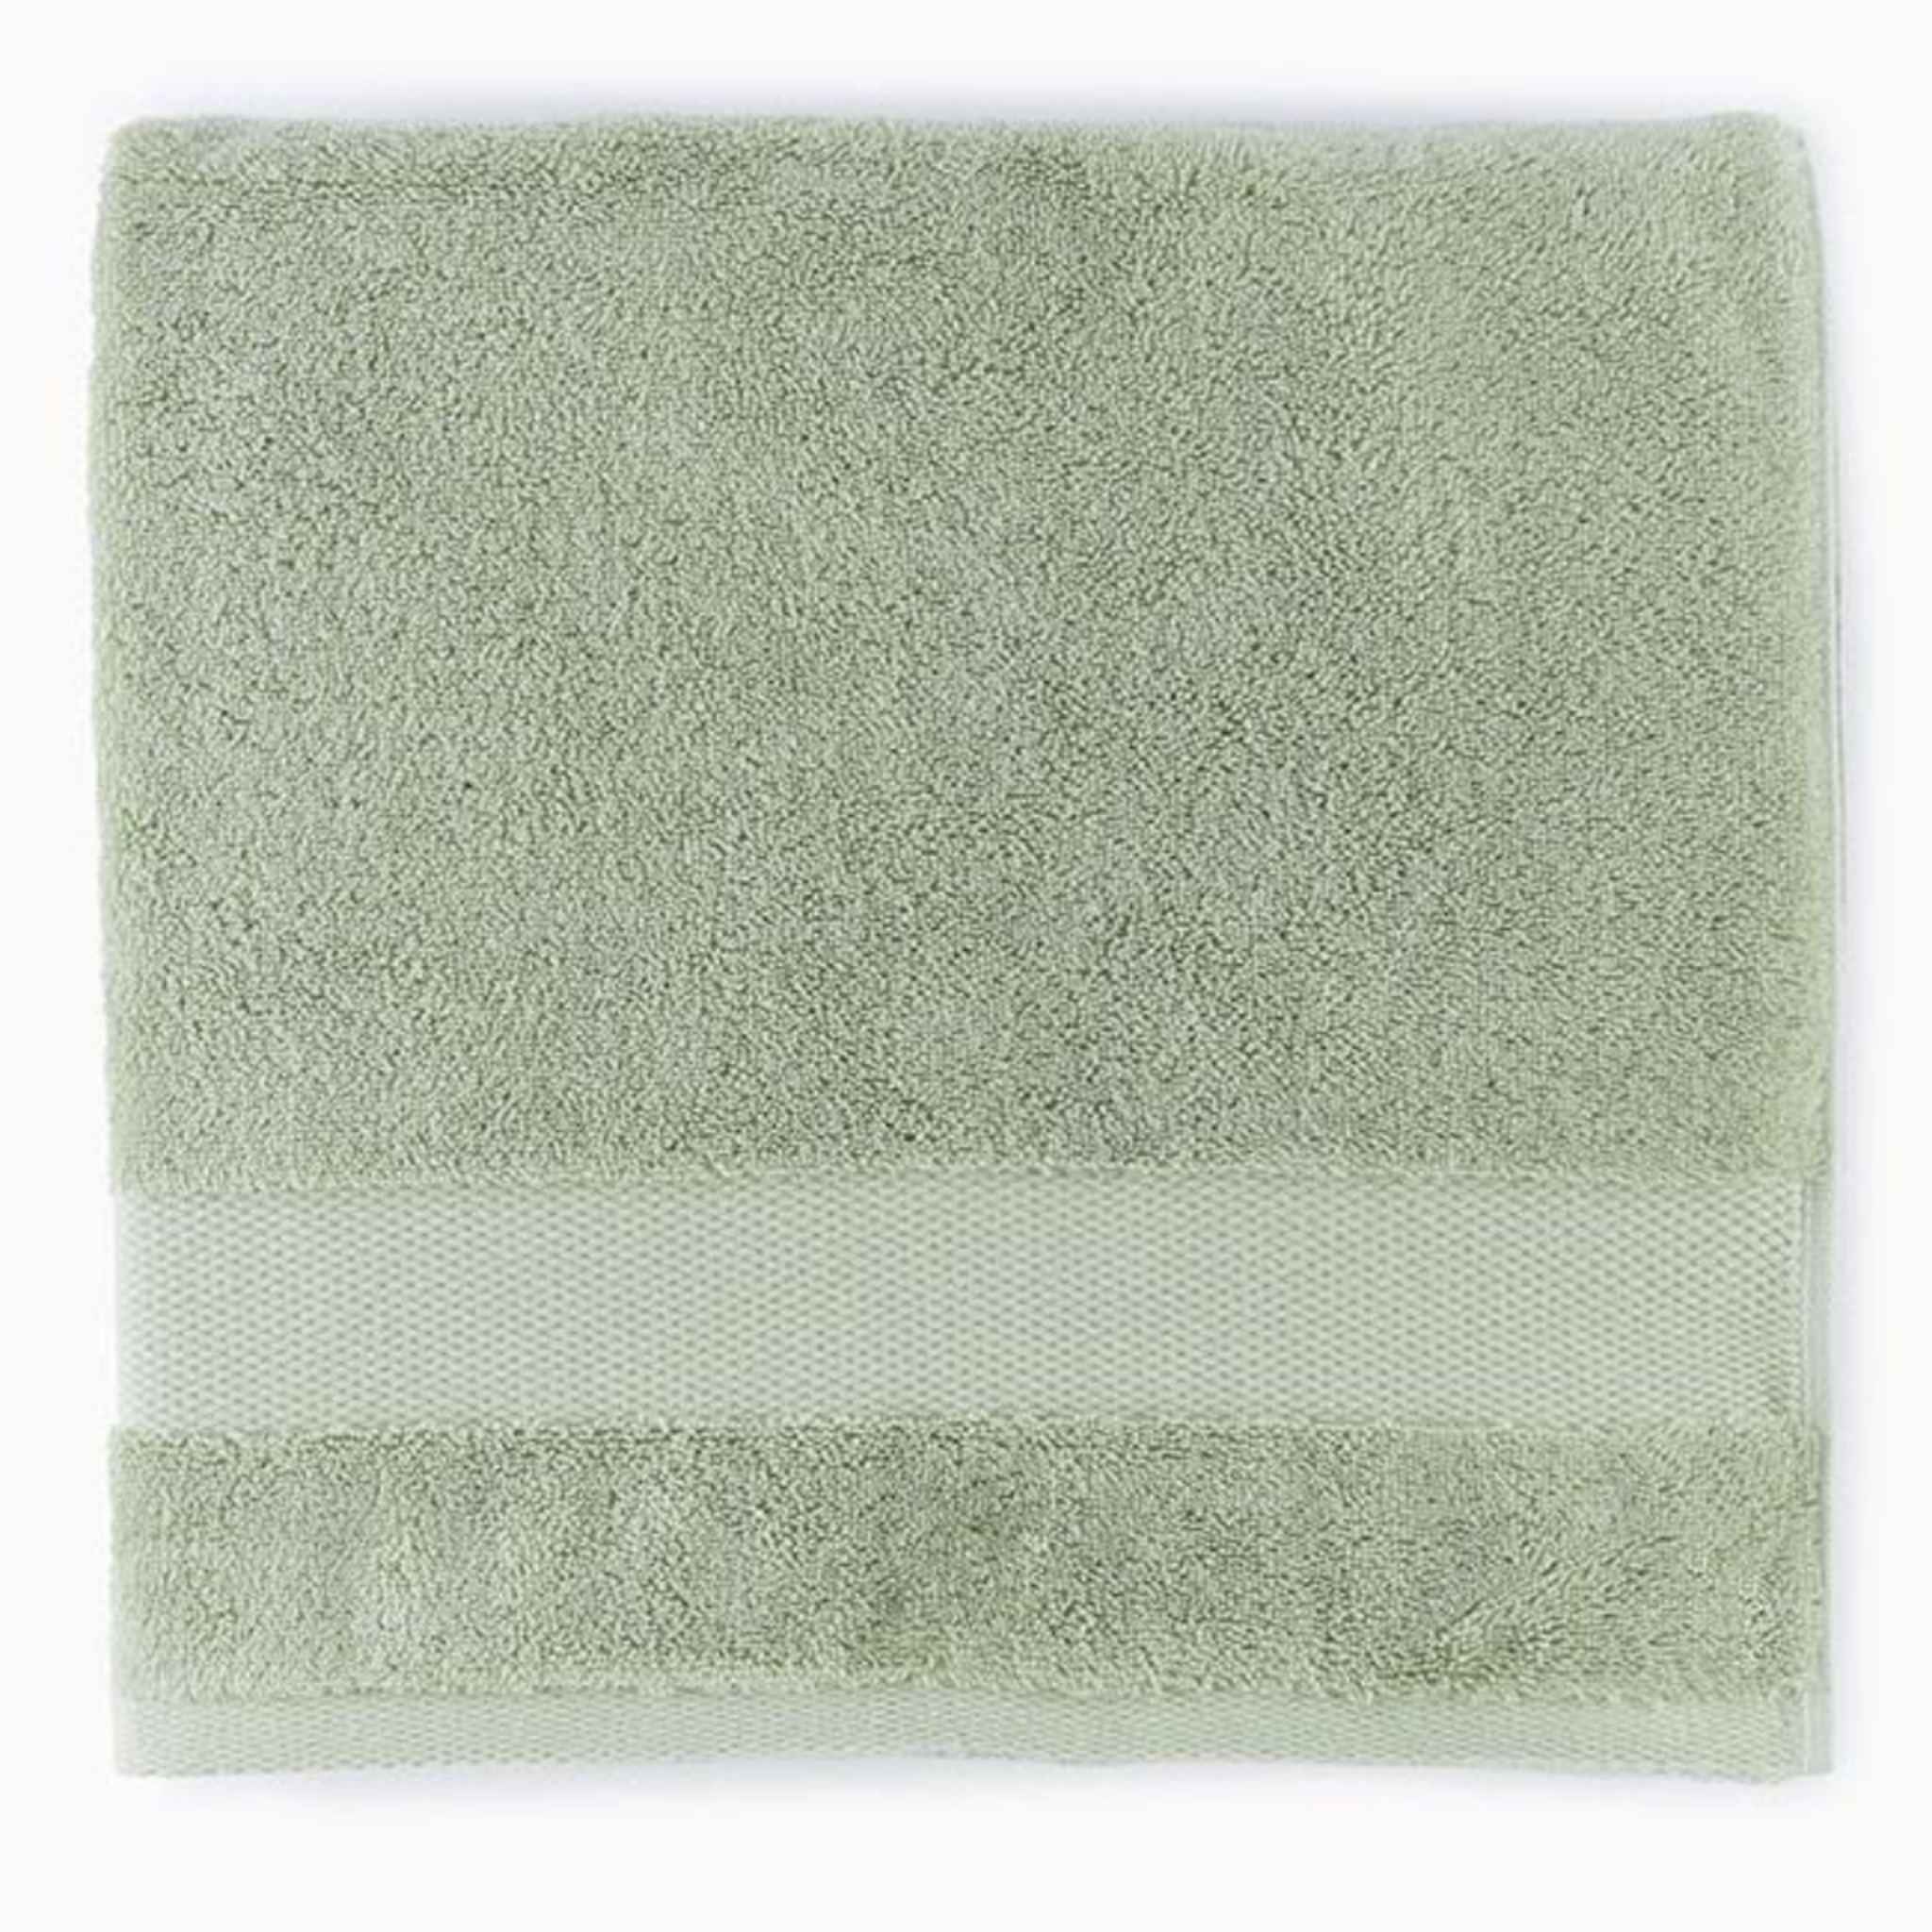 https://flandb.com/cdn/shop/products/Sferra-Bello-Bath-Towels-Celadon-Main_5000x.png?v=1668167932